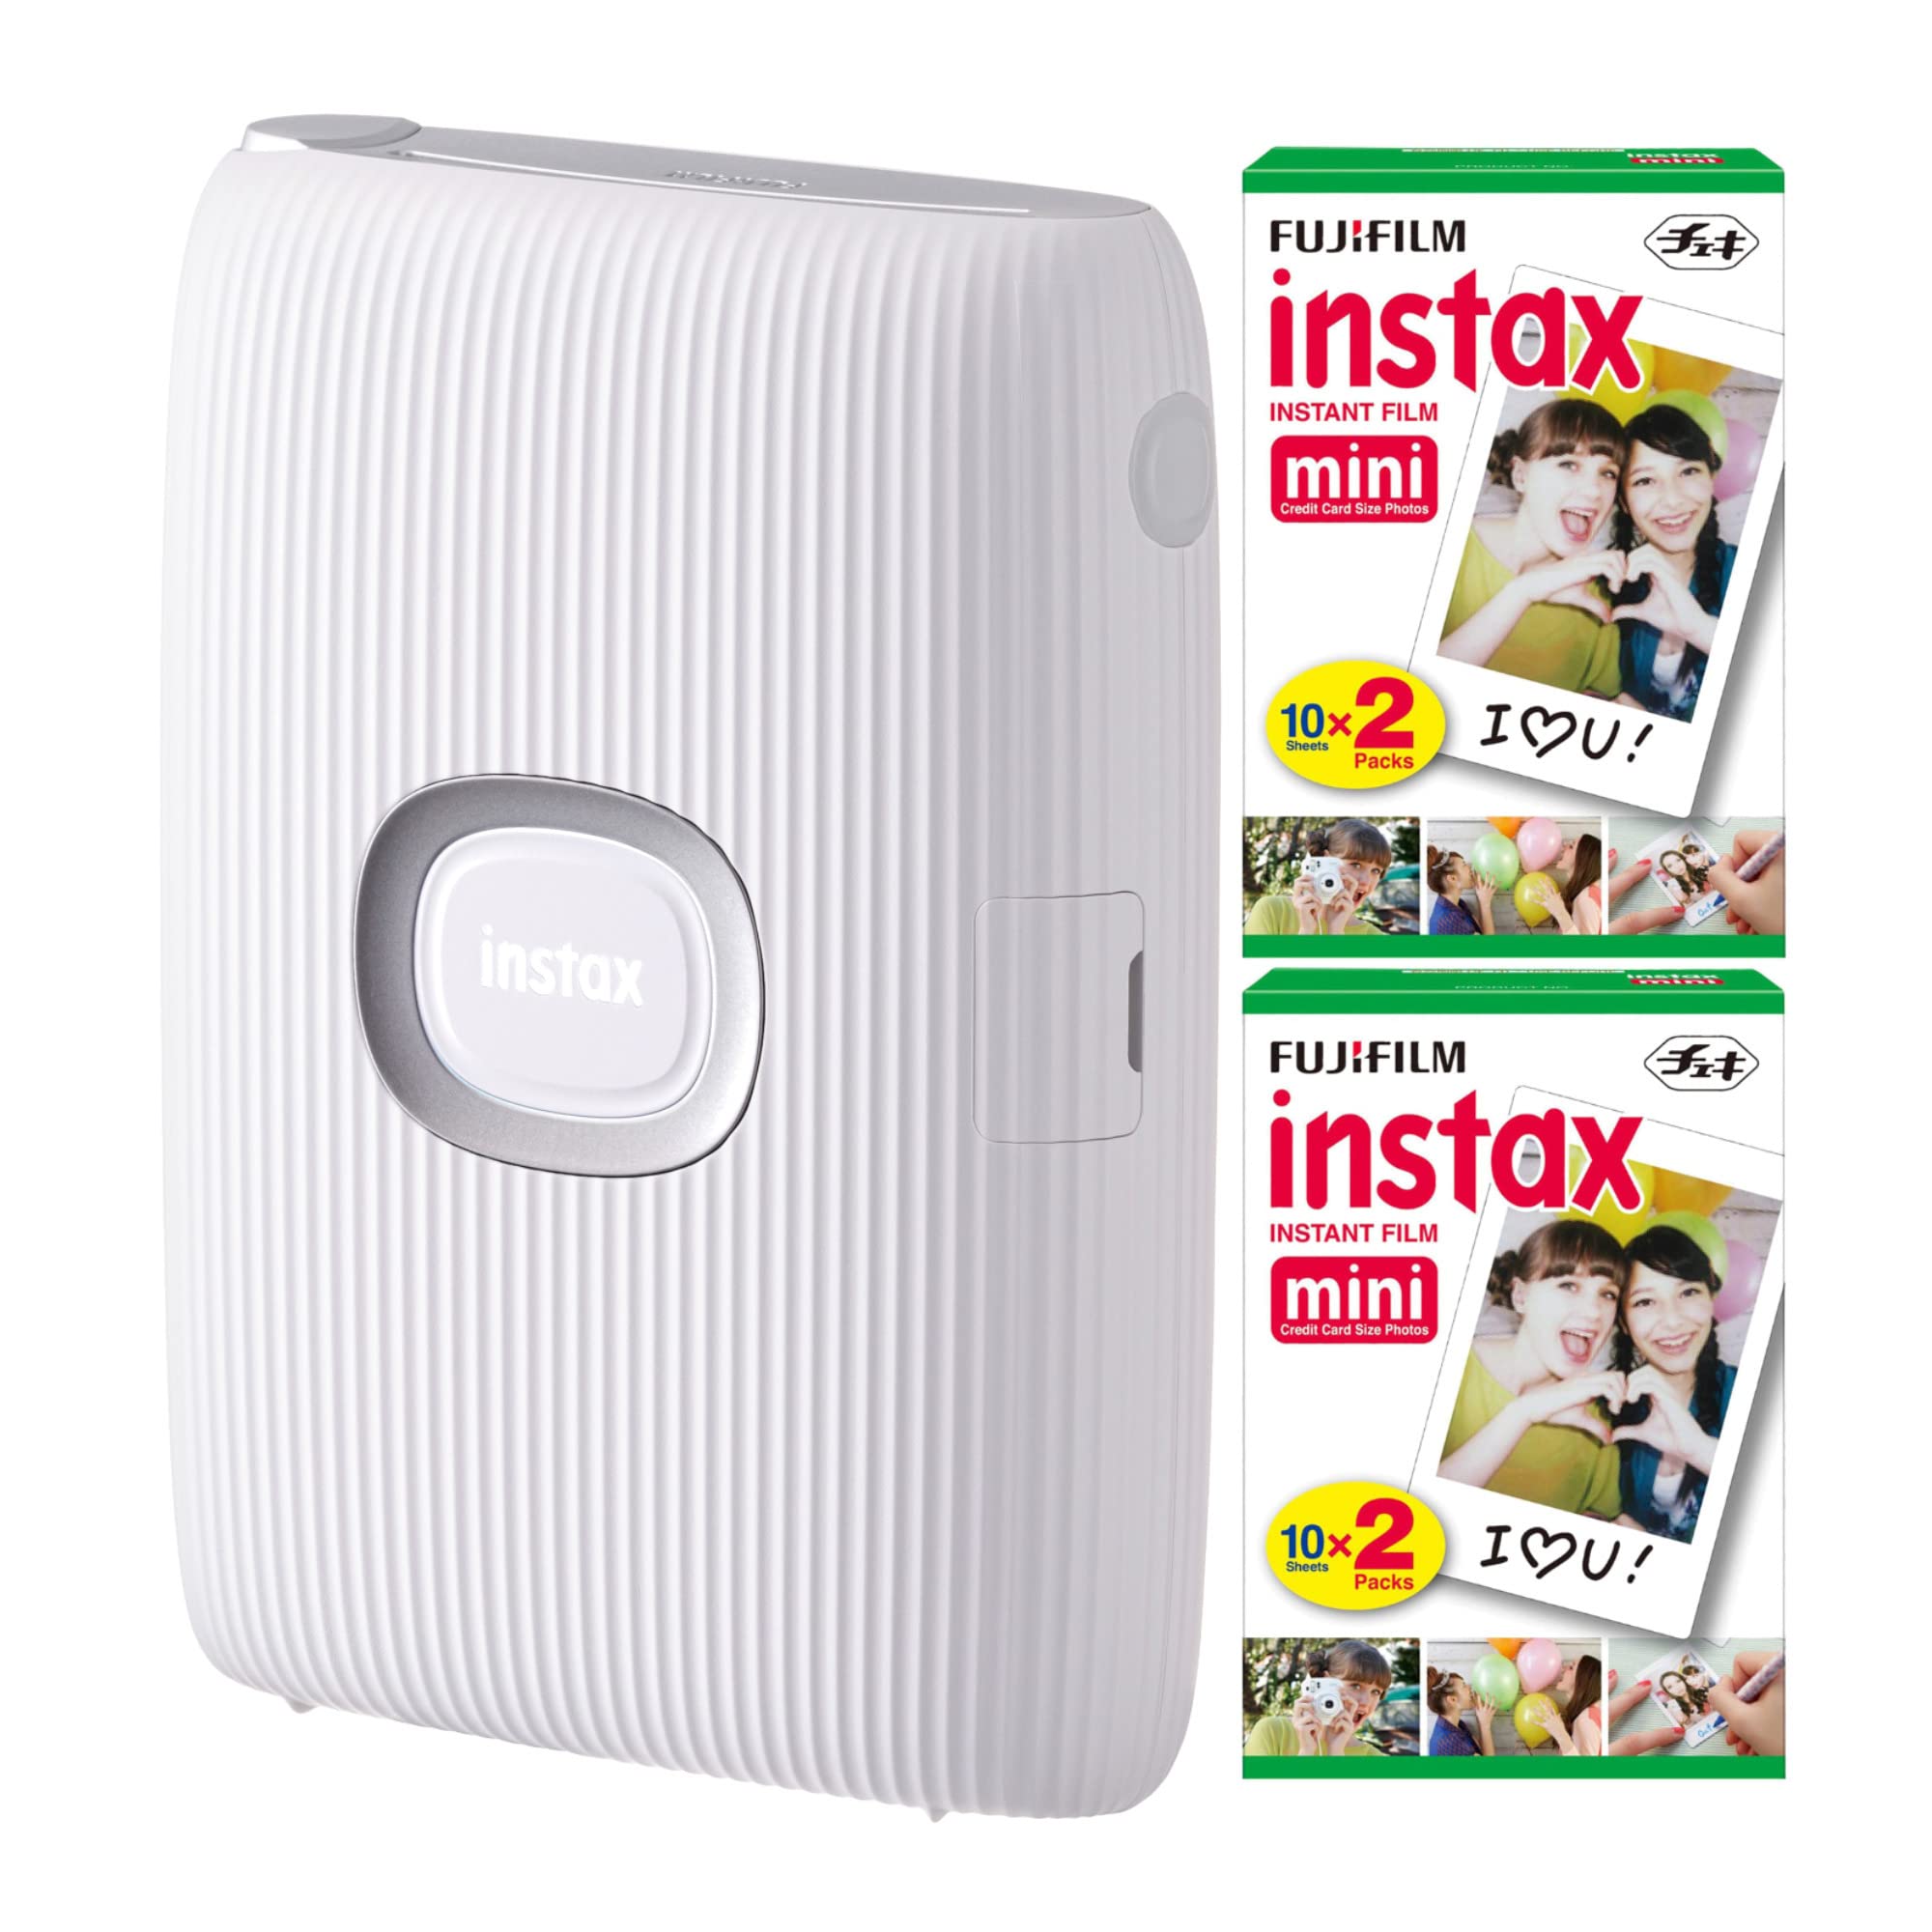 Fujifilm طابعة Instax Mini Link الفورية للهواتف الذكية مع حزمة فيلم Instax